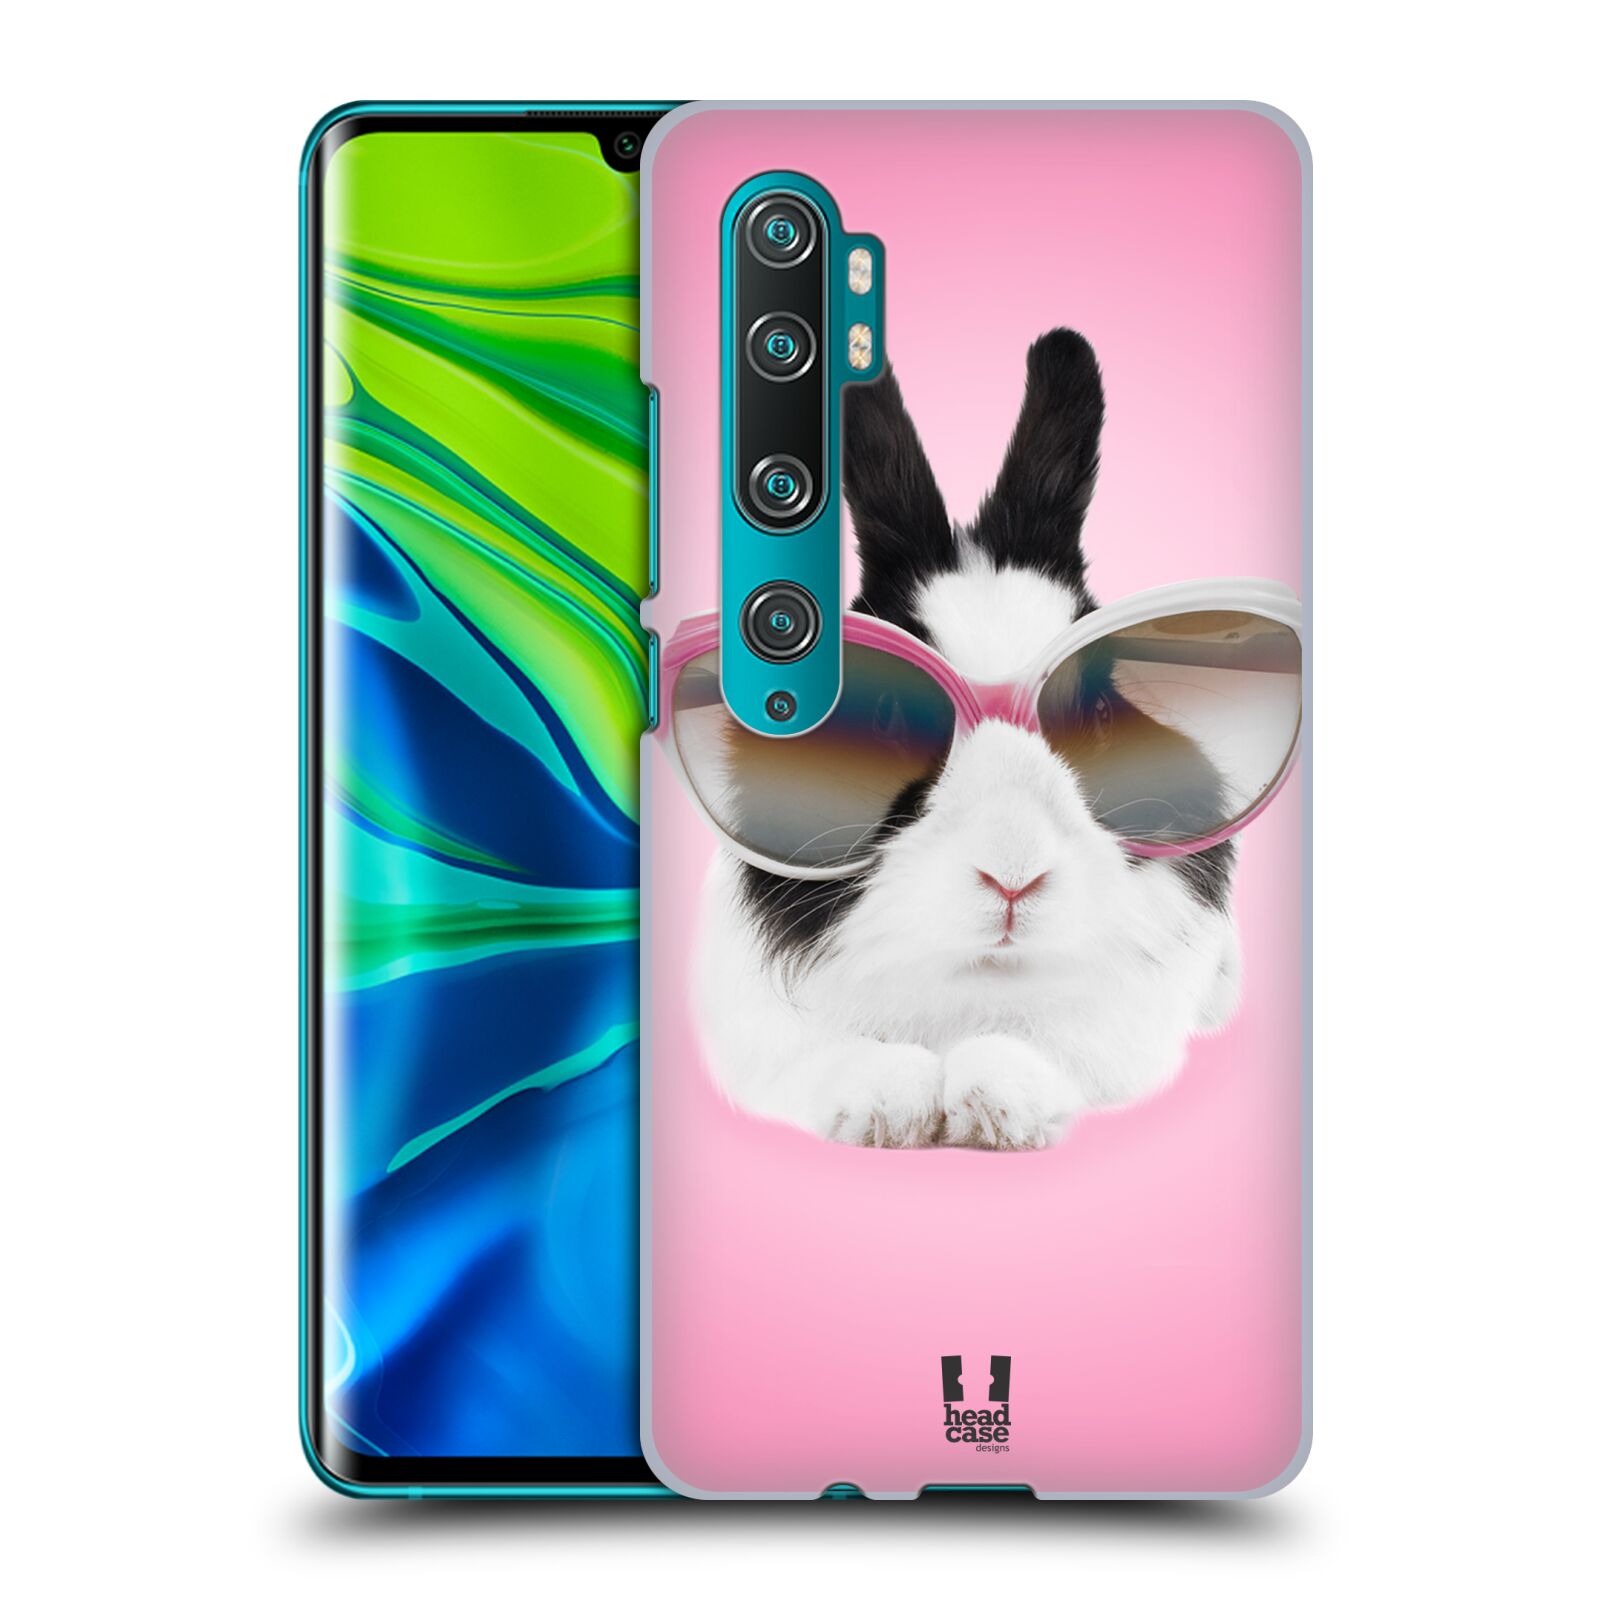 Pouzdro na mobil Xiaomi Mi Note 10 / Mi Note 10 PRO - HEAD CASE - vzor Legrační zvířátka roztomilý králíček s brýlemi růžová